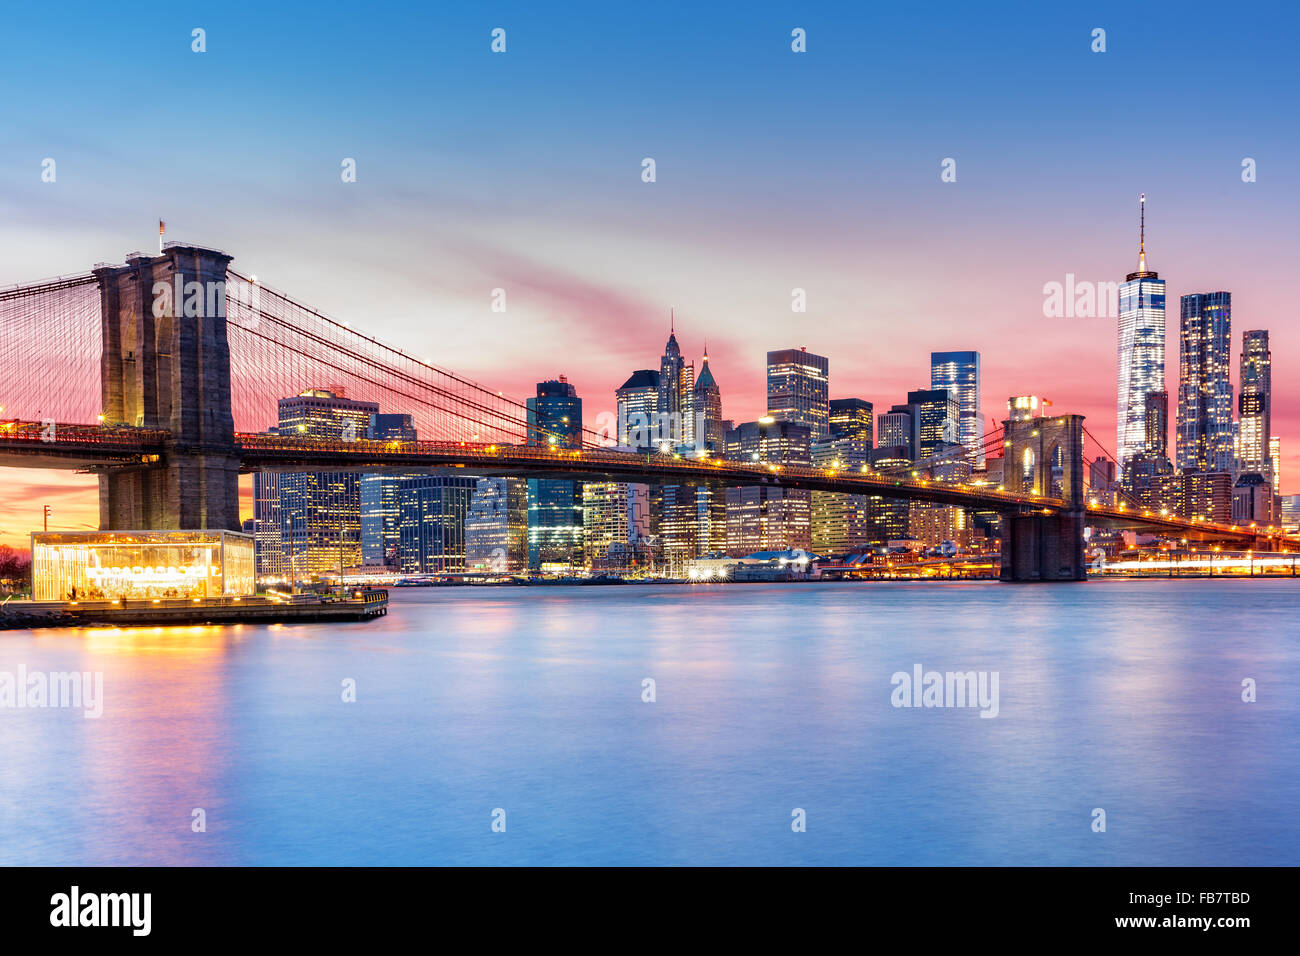 Pont de Brooklyn et le Lower Manhattan skyline sous un coucher de soleil pourpre Banque D'Images